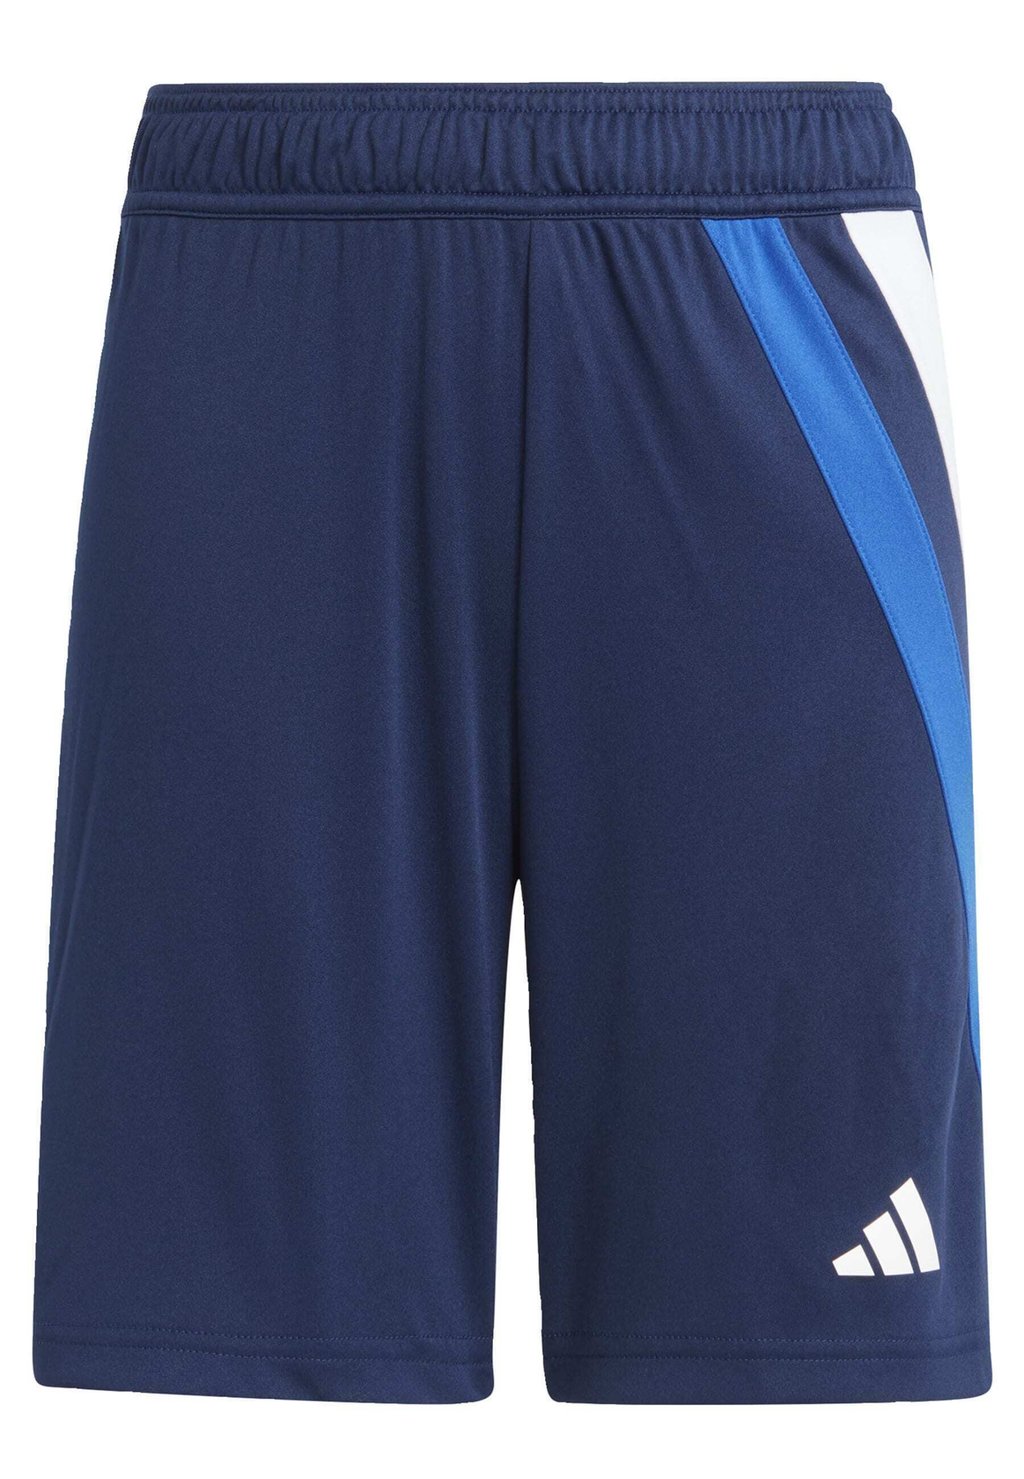 Спортивные шорты Fortore 23 Adidas, цвет team navy blue royal blue white team collegiate red